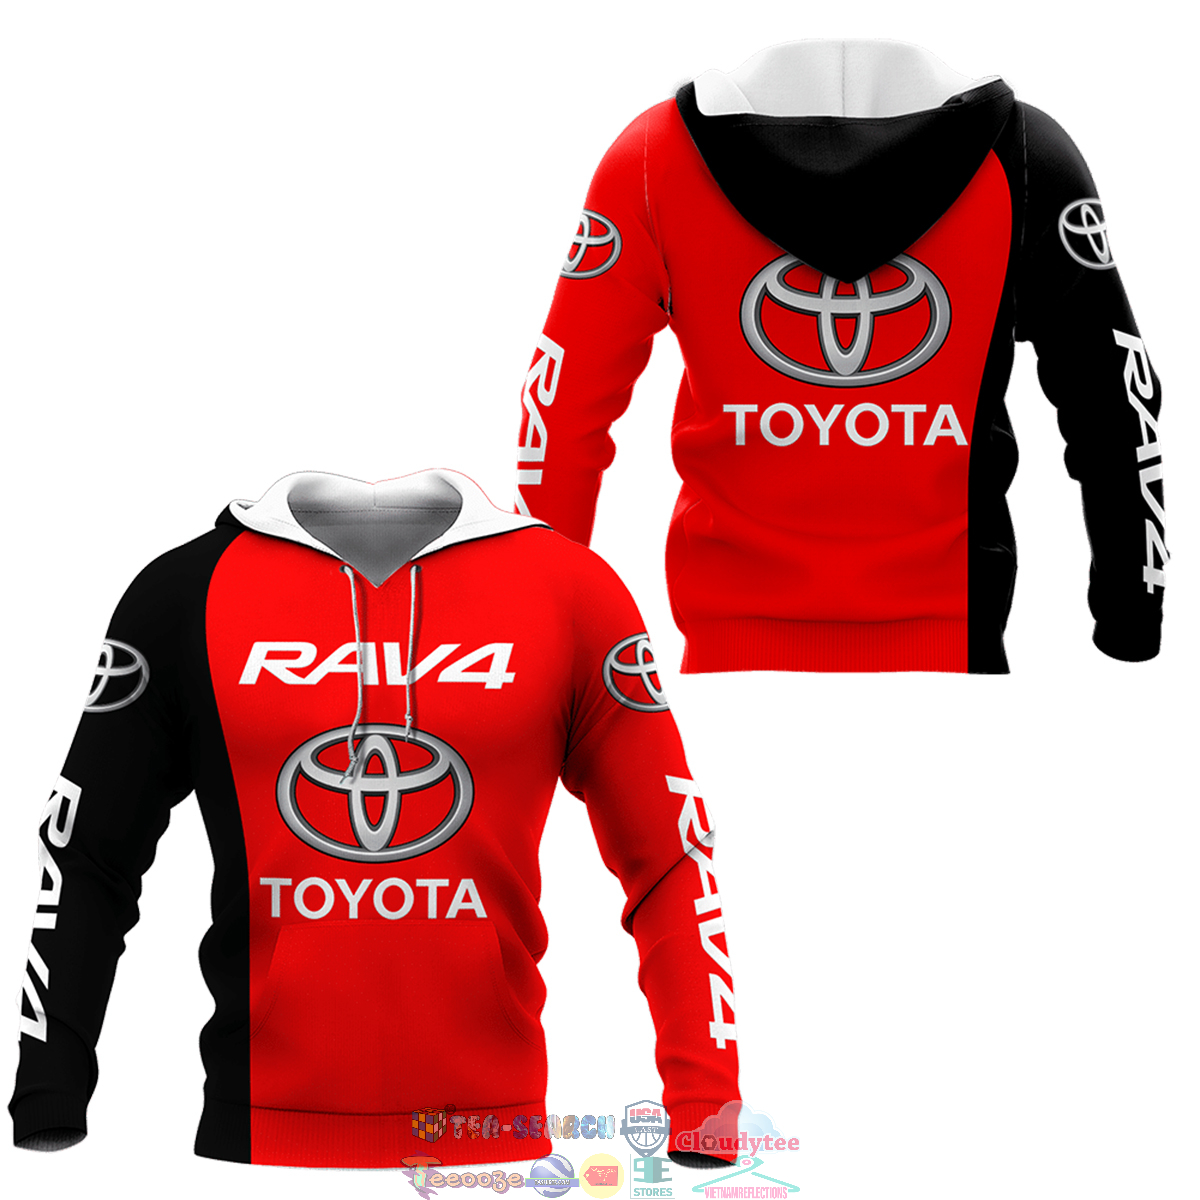 Toyota Rav4 ver 2 hoodie and t-shirt